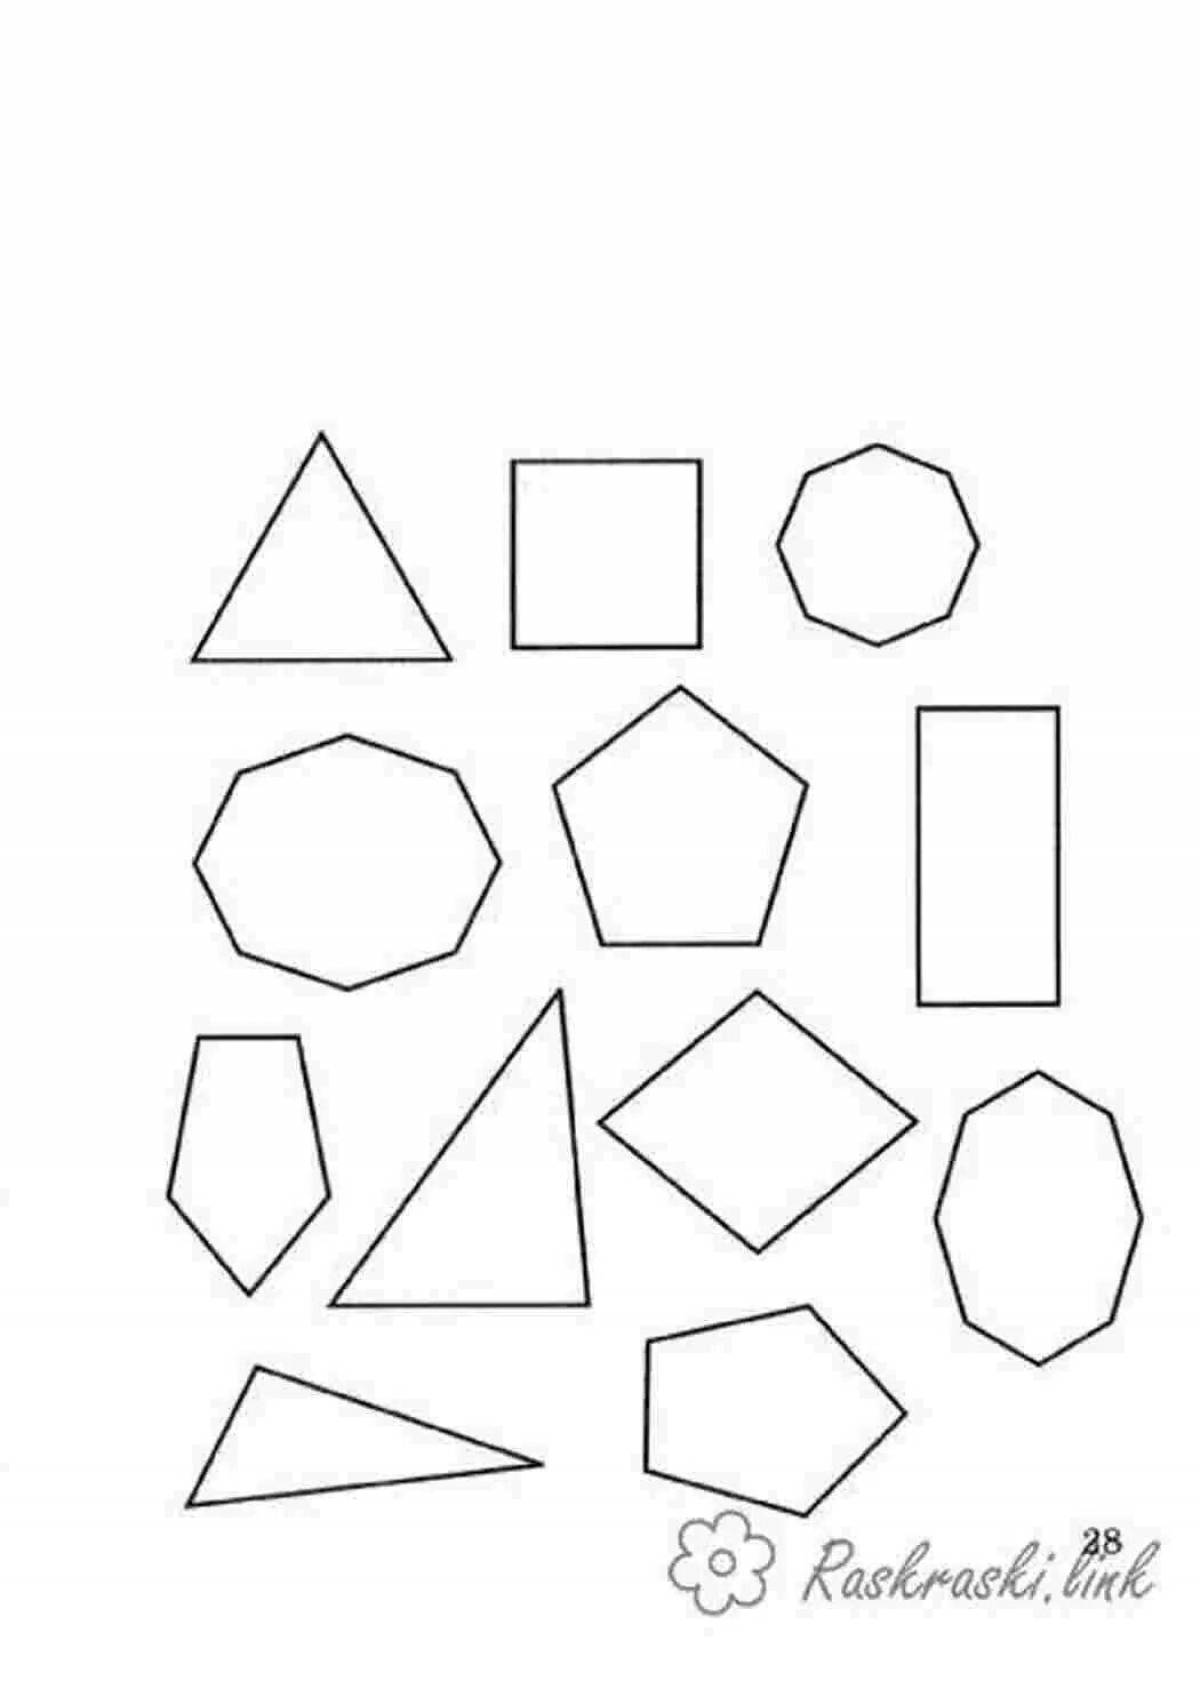 Как нарисовать многоугольник в CorelDRAW